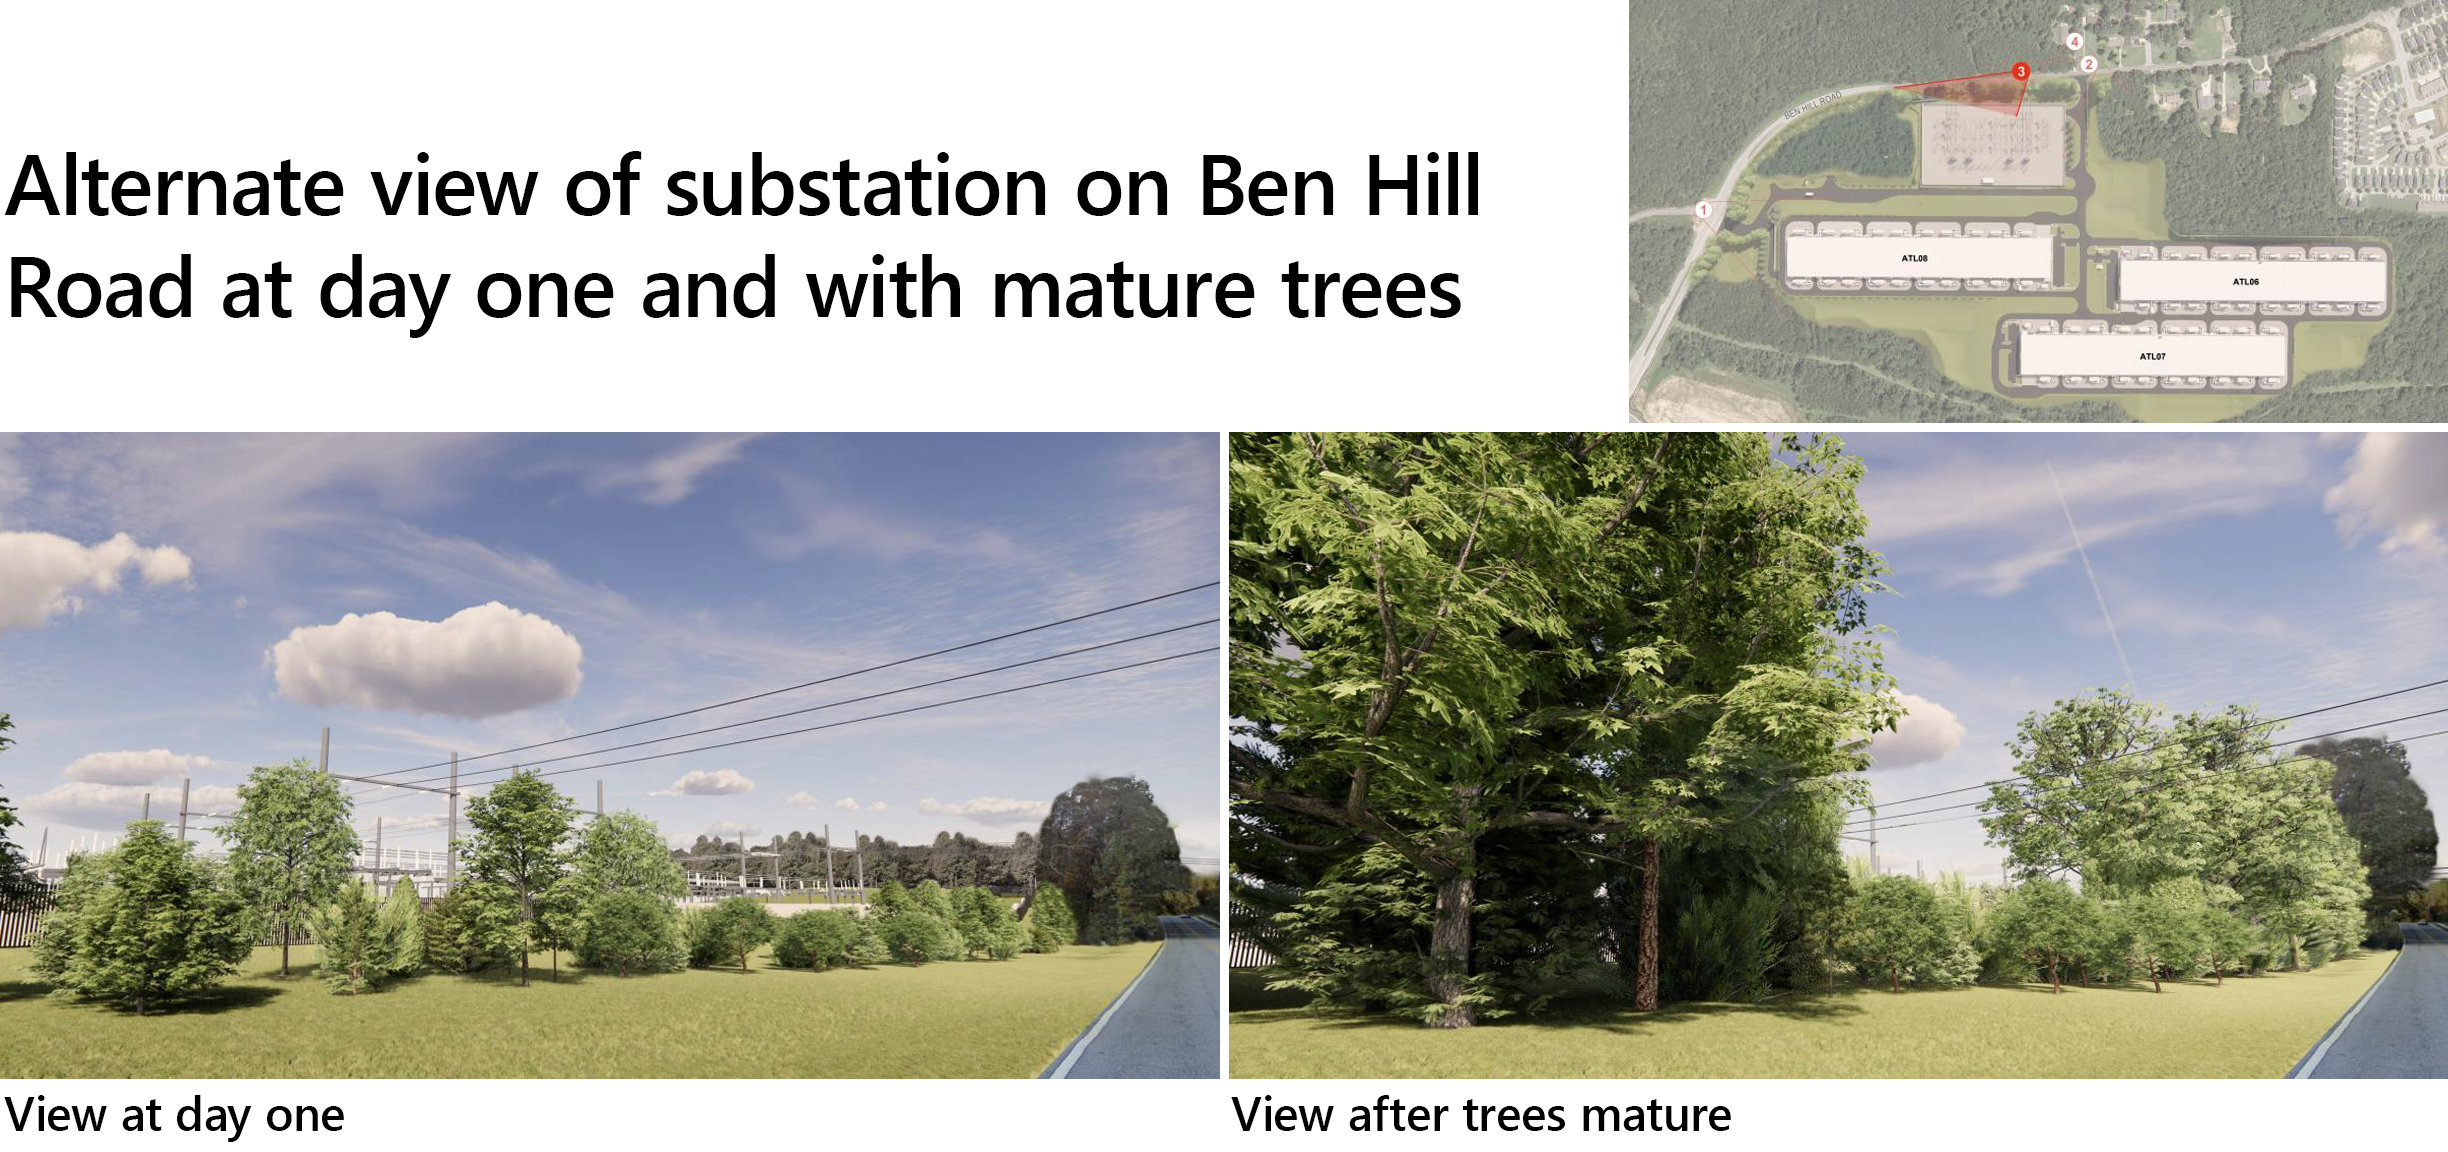 Alternativ vy av transformatorstationen på Ben Hill Road vid dag ett och med uppvuxna träd.